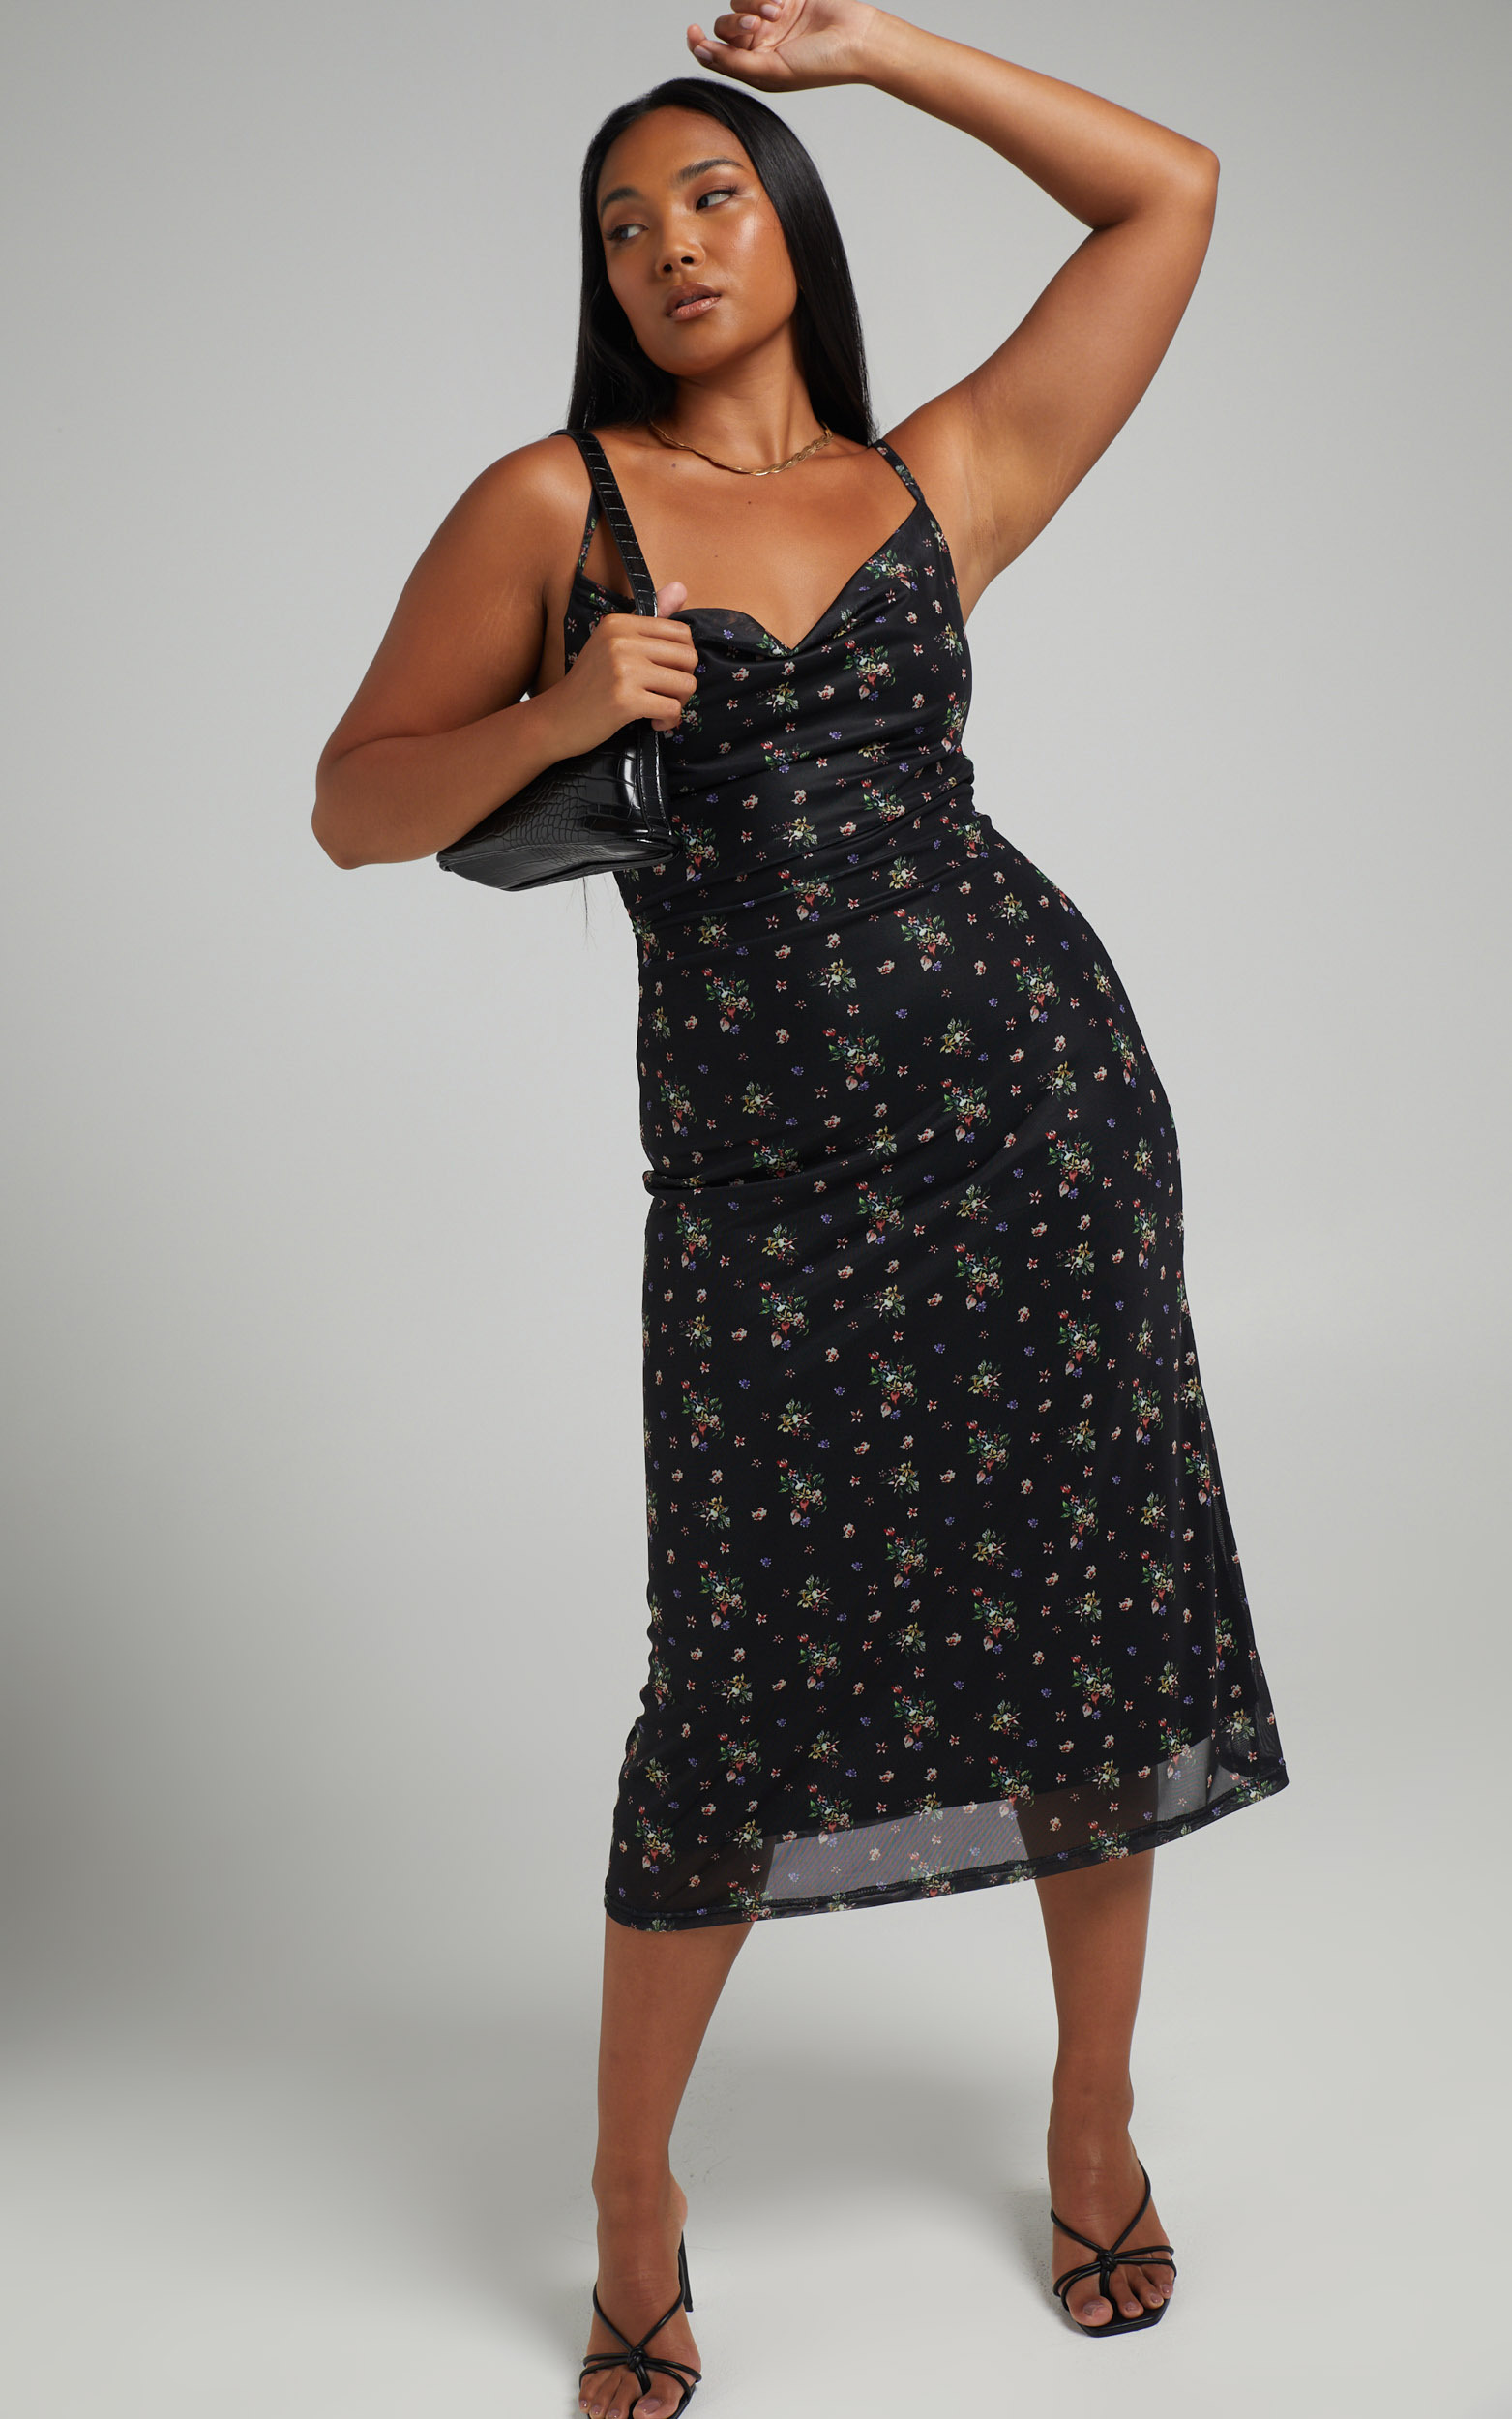 Roselyn Cowl Neck Open Back Midi Dress in Black Floral - 06, BLK1, hi-res image number null